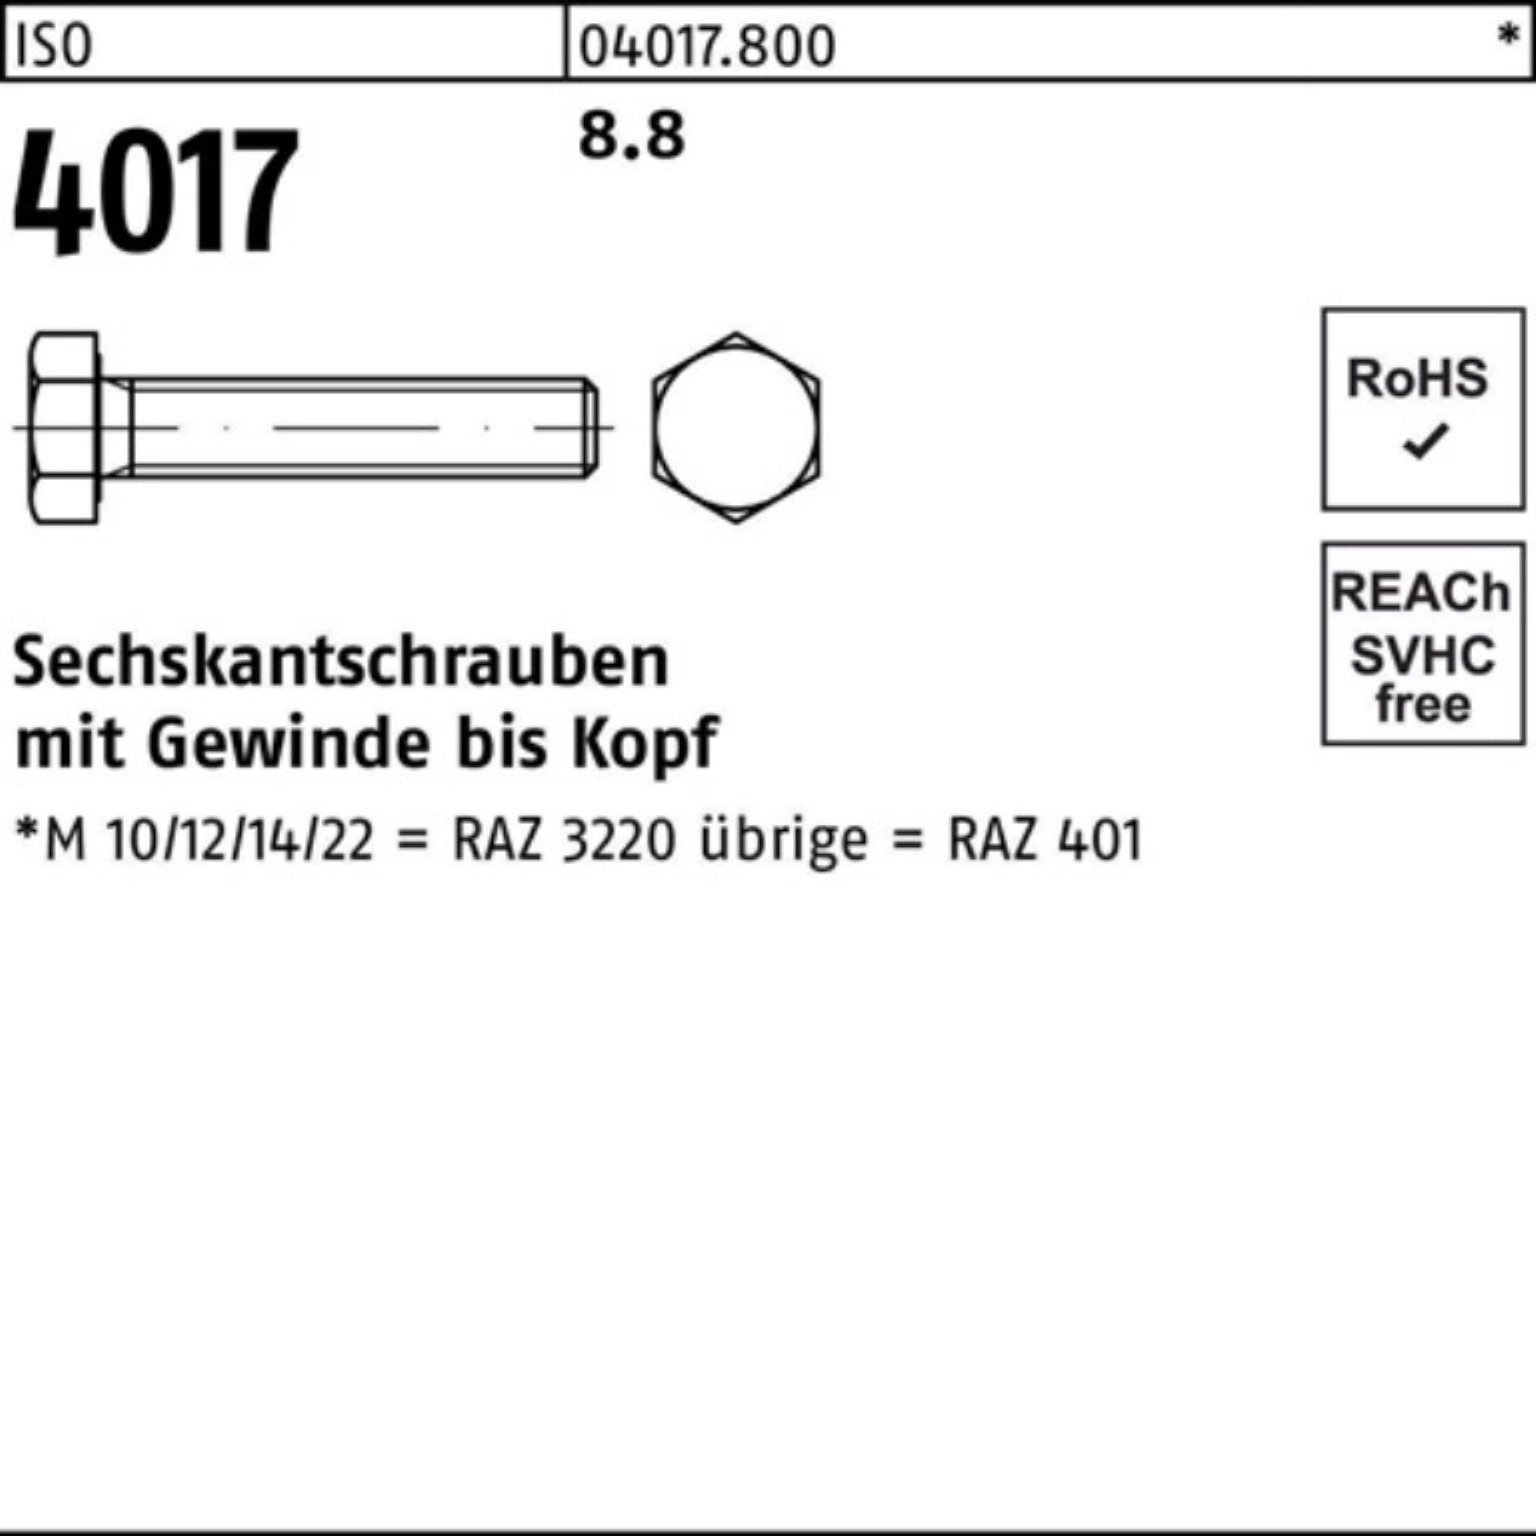 Stück Pack Bufab Sechskantschraube M10x 40 50 VG 4017 8.8 ISO 220 ISO Sechskantschraube 100er